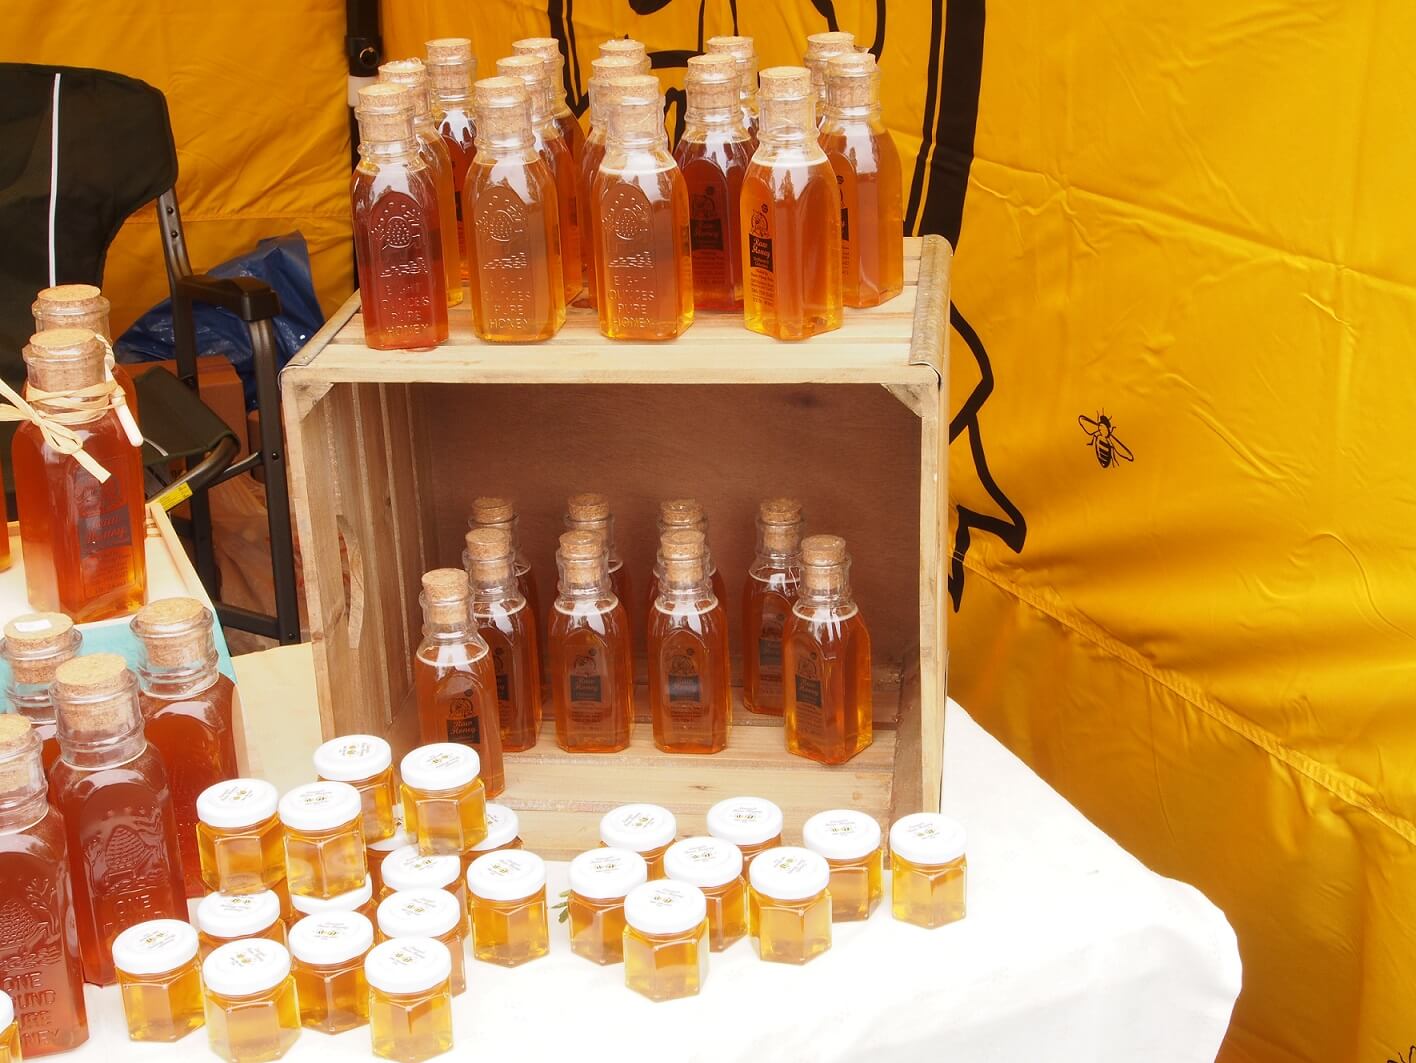 Laura's Raw Honey from Doan's Honey Farm, handcrafted specialty foods, beekeeper, honey, raw honey, handmade